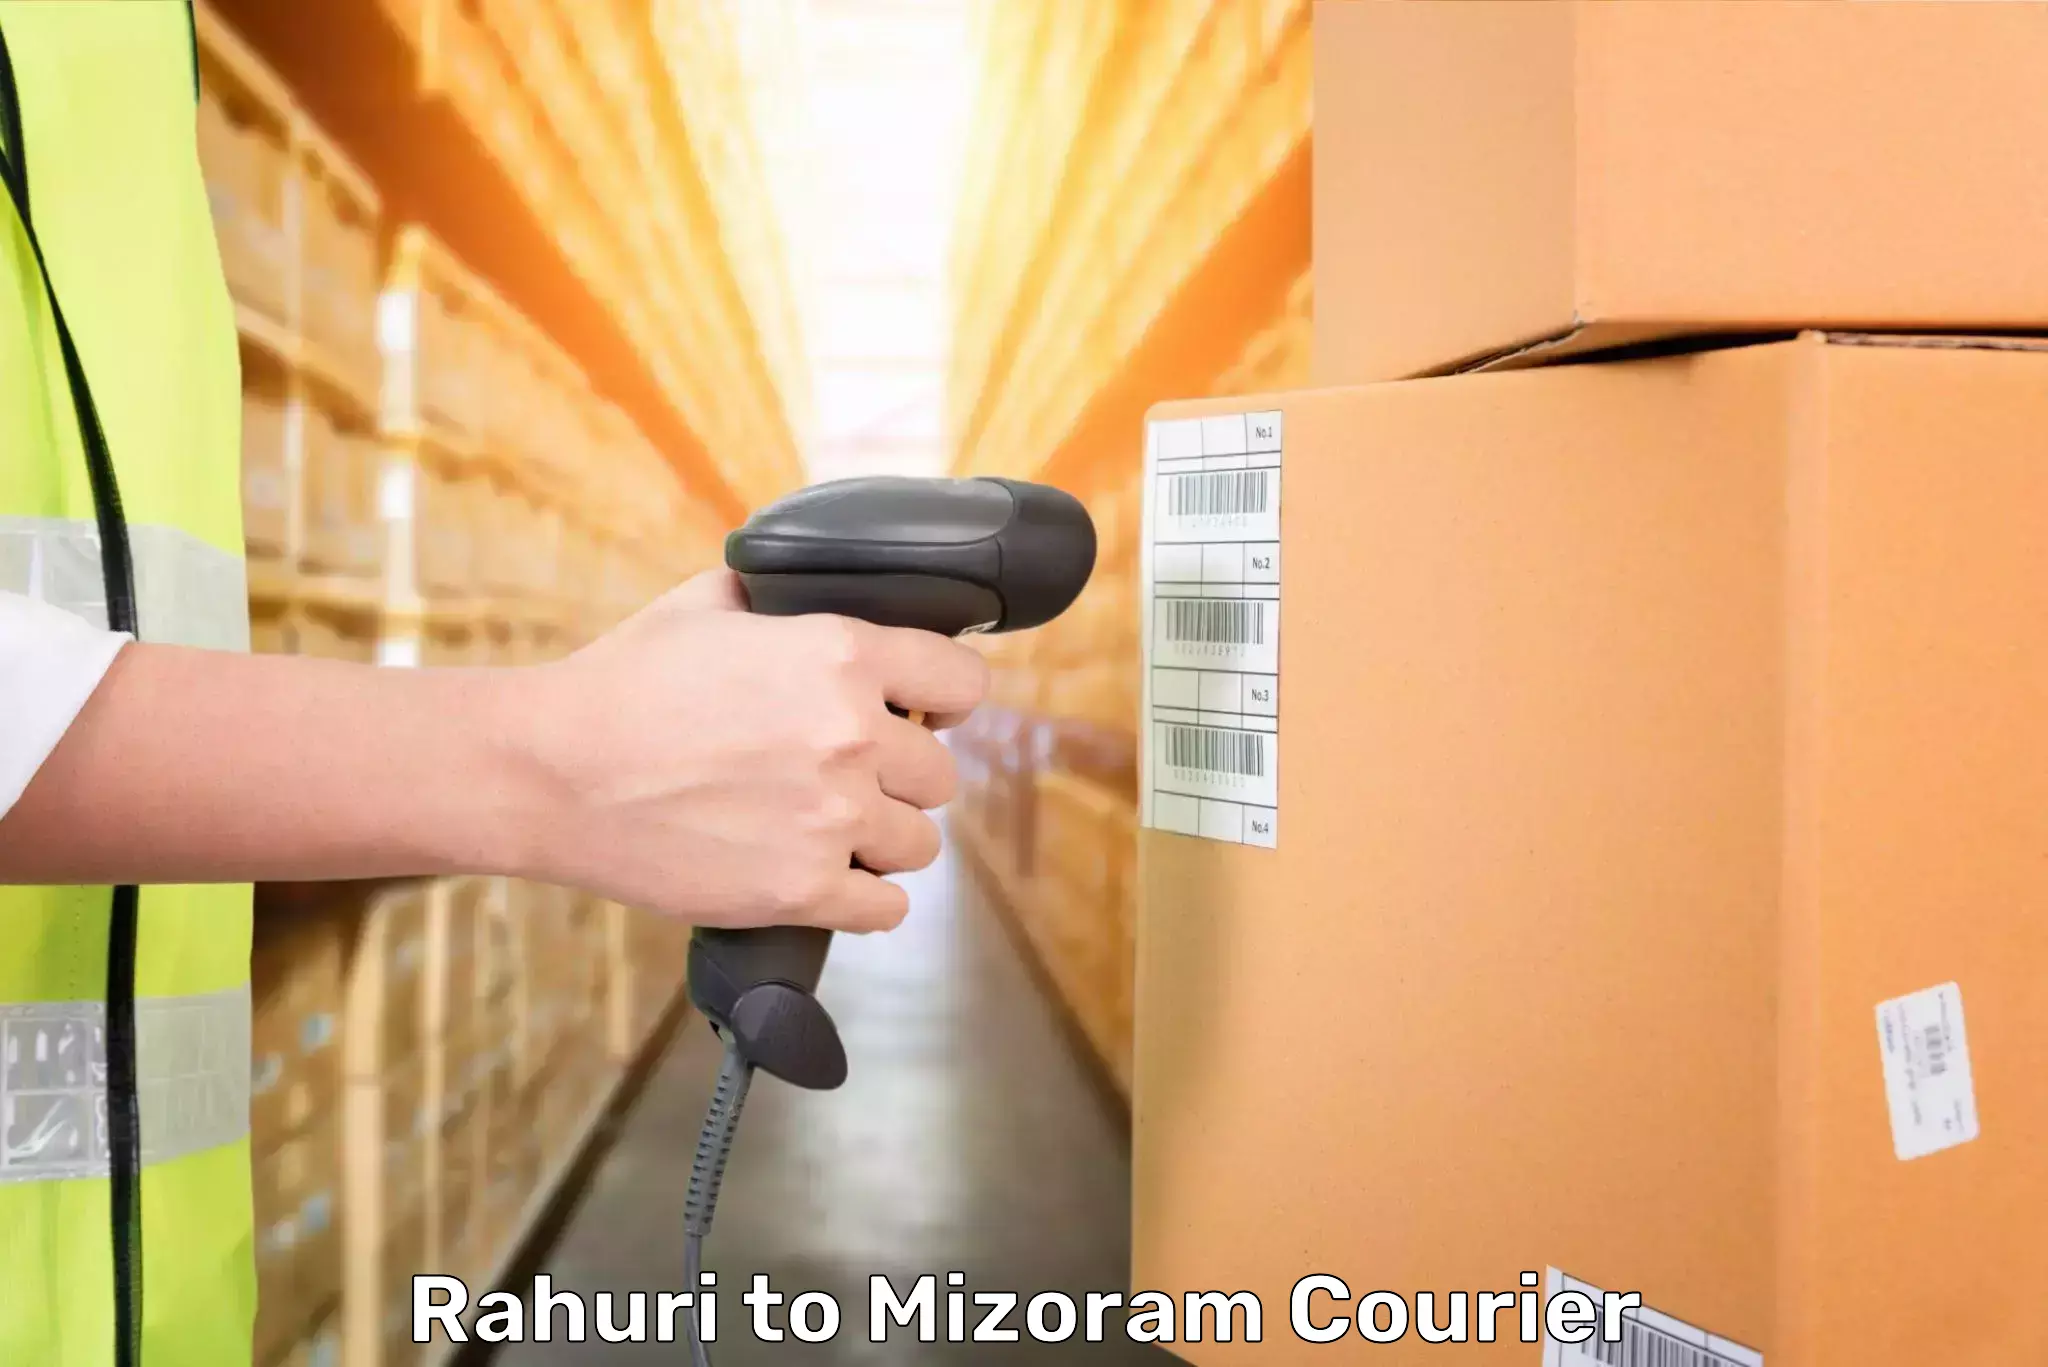 Baggage transport innovation Rahuri to Mizoram